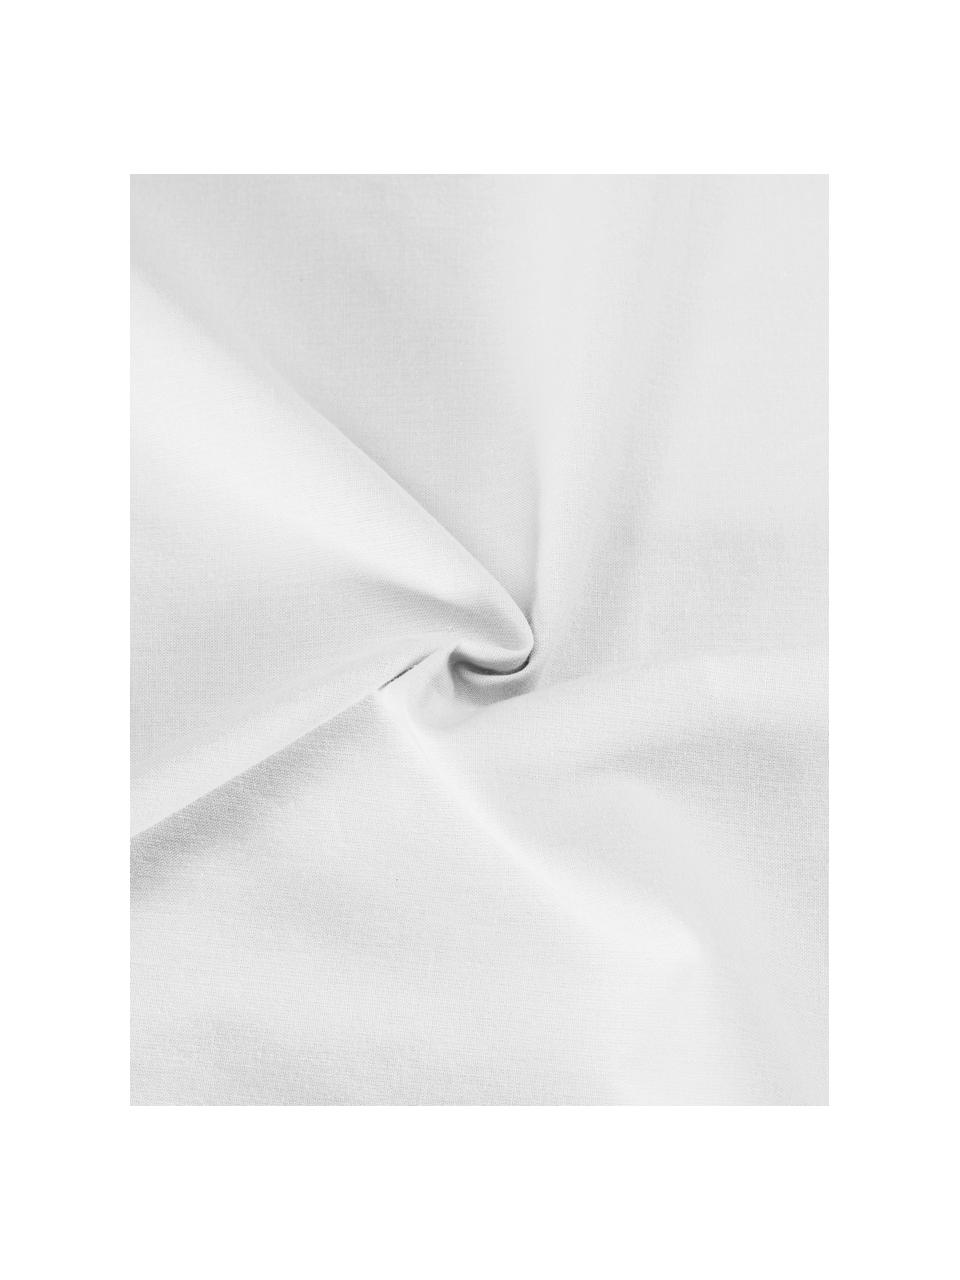 Plumetti-Bettwäsche Aloide in Weiß, Webart: Plumetti Fadendichte 160 , Weiß, 200 x 200 cm + 2 Kissen 80 x 80 cm